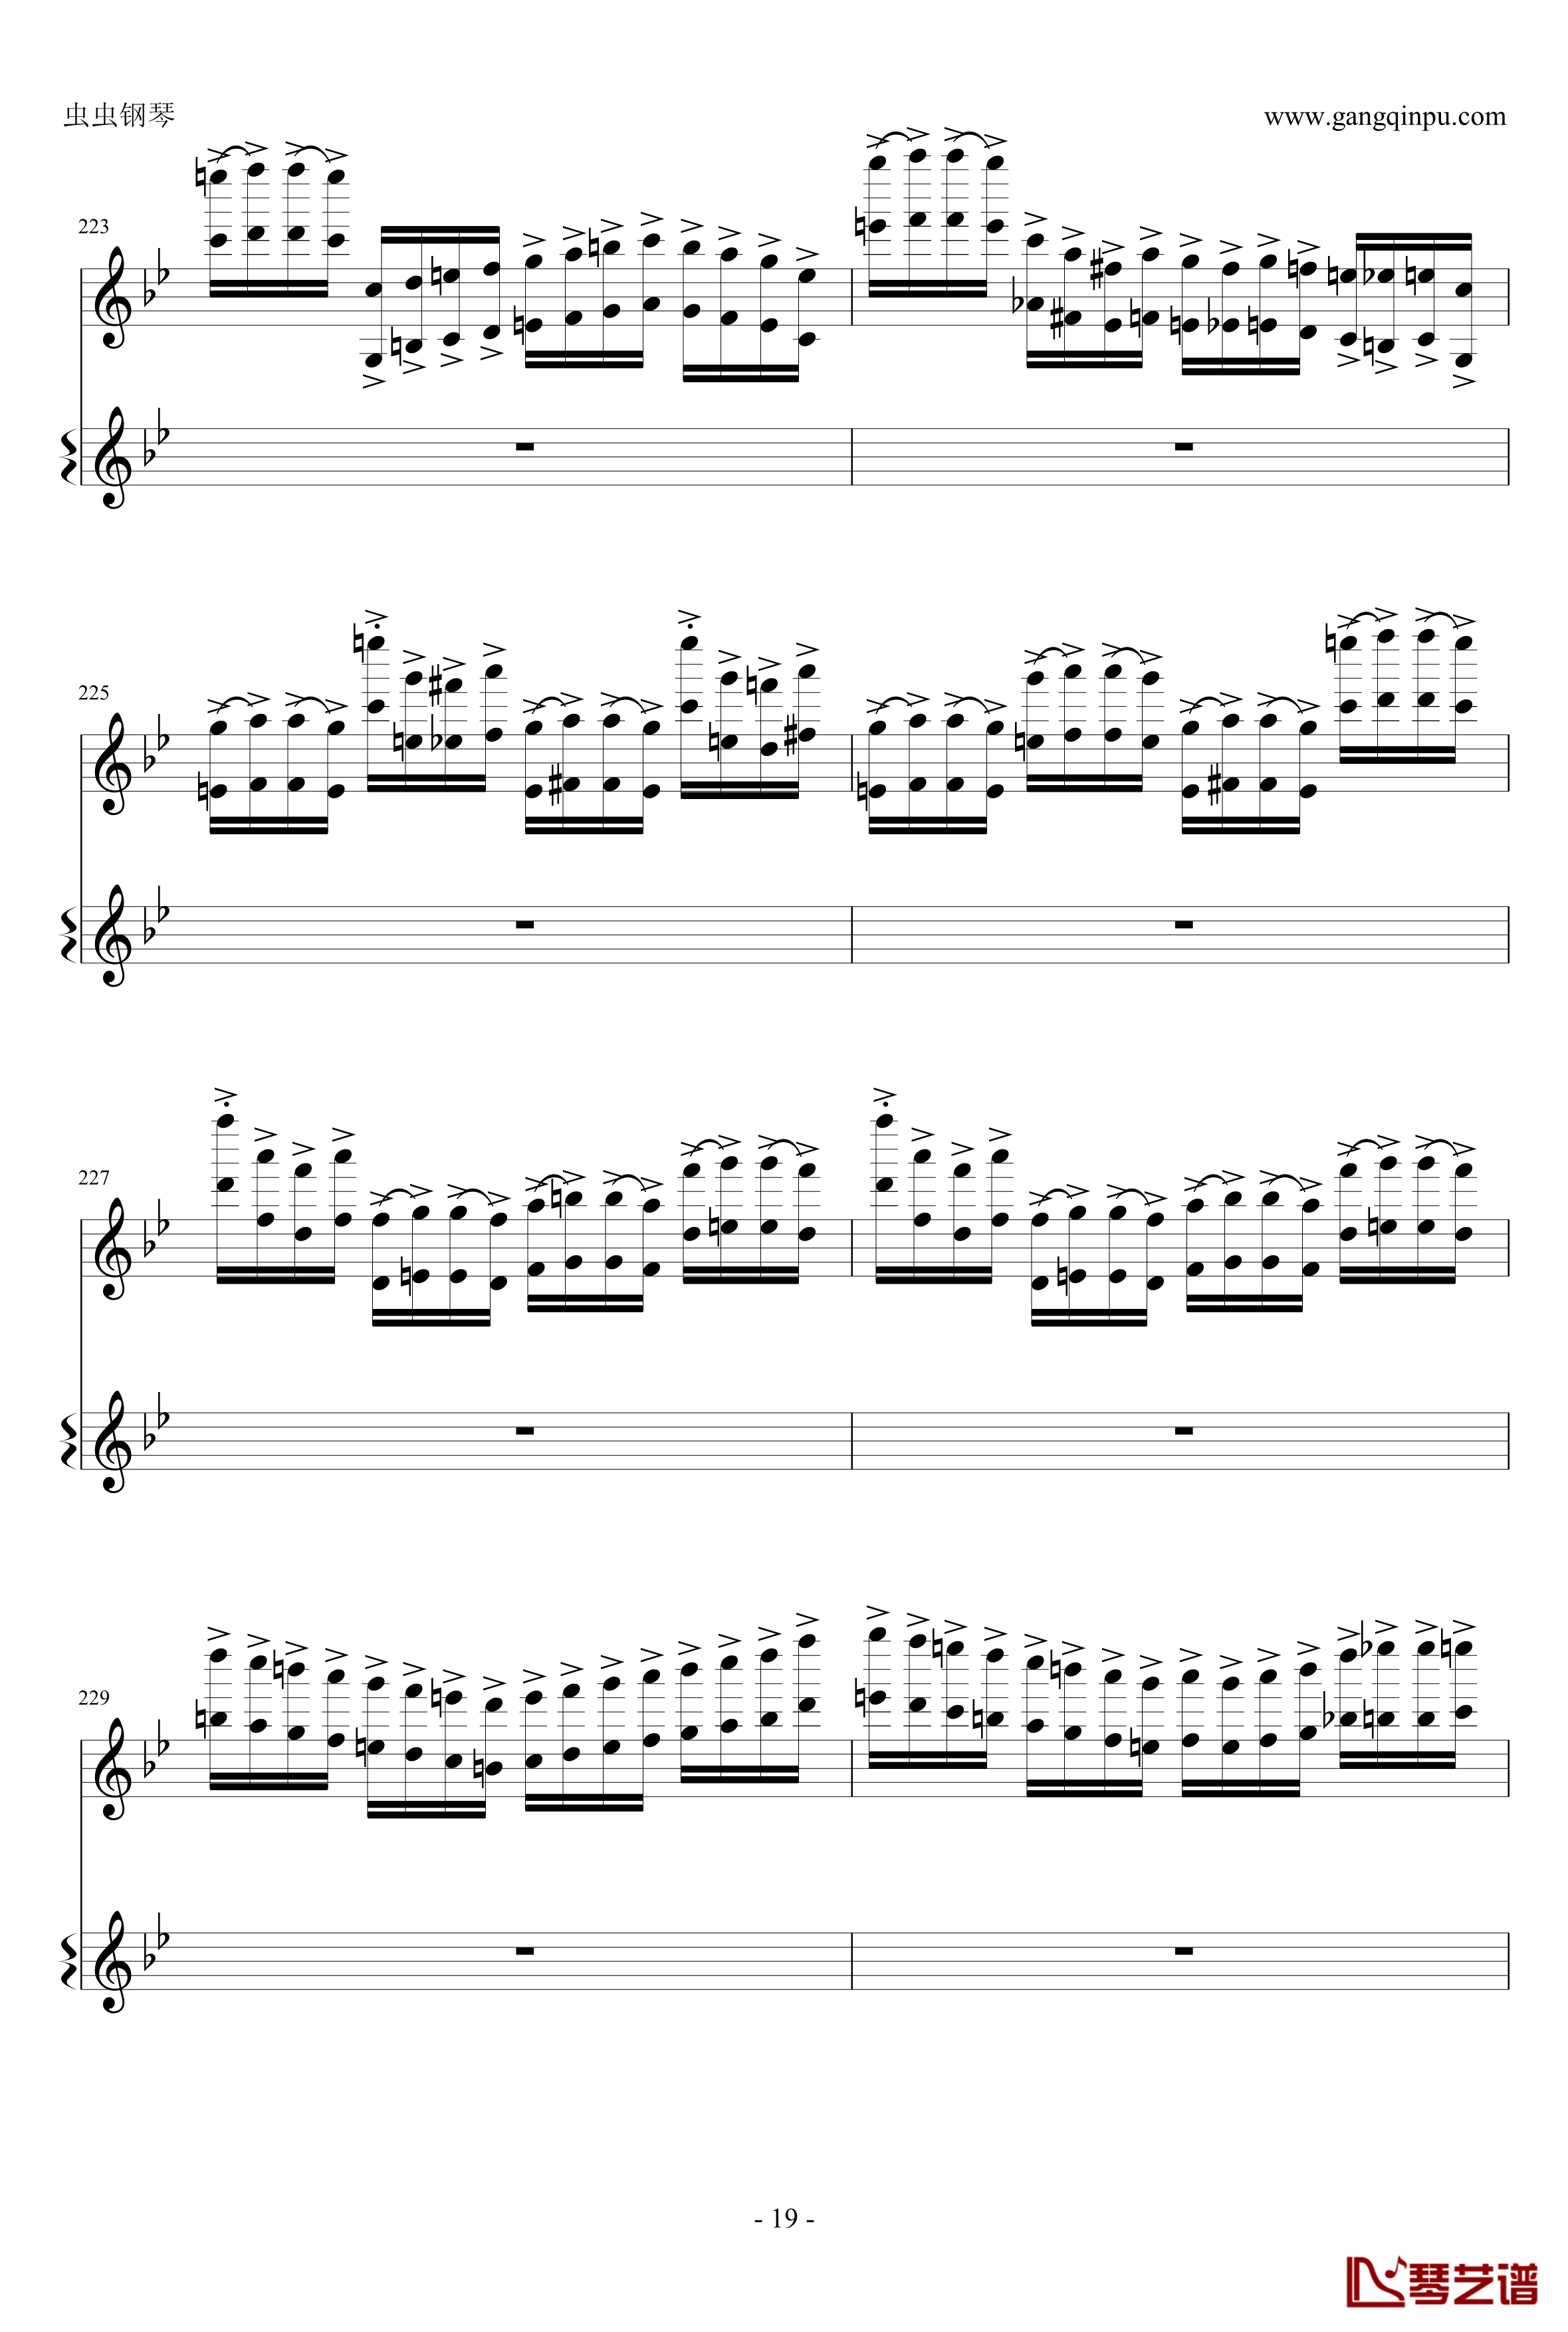 意大利国歌钢琴谱-变奏曲修改版-DXF19